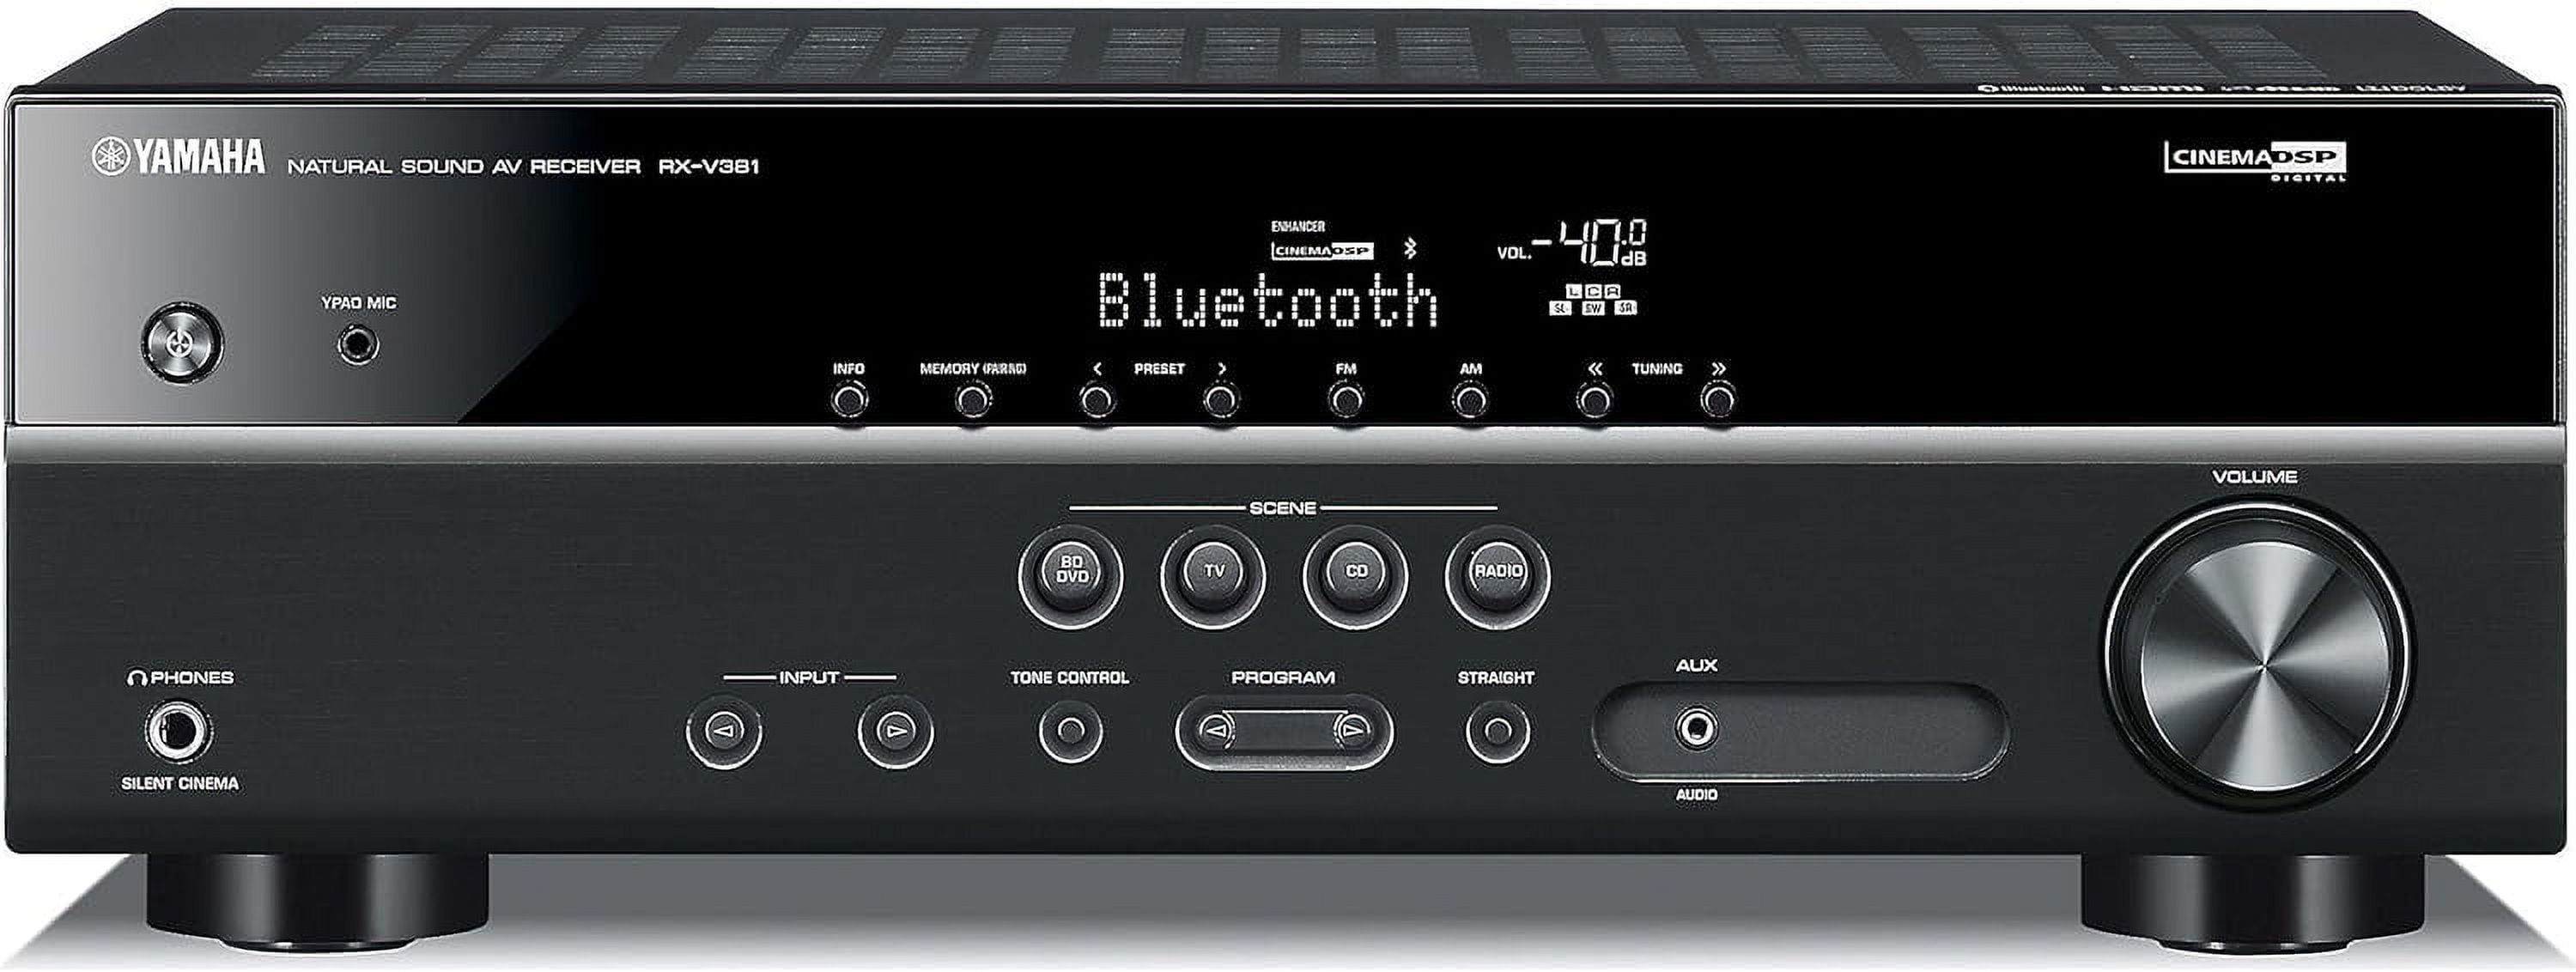  Yamaha Sistema de cine en casa inalámbrico de 5.1 canales  Bluetooth 4K 3D A/V Surround Sound Multimedia : Electrónica